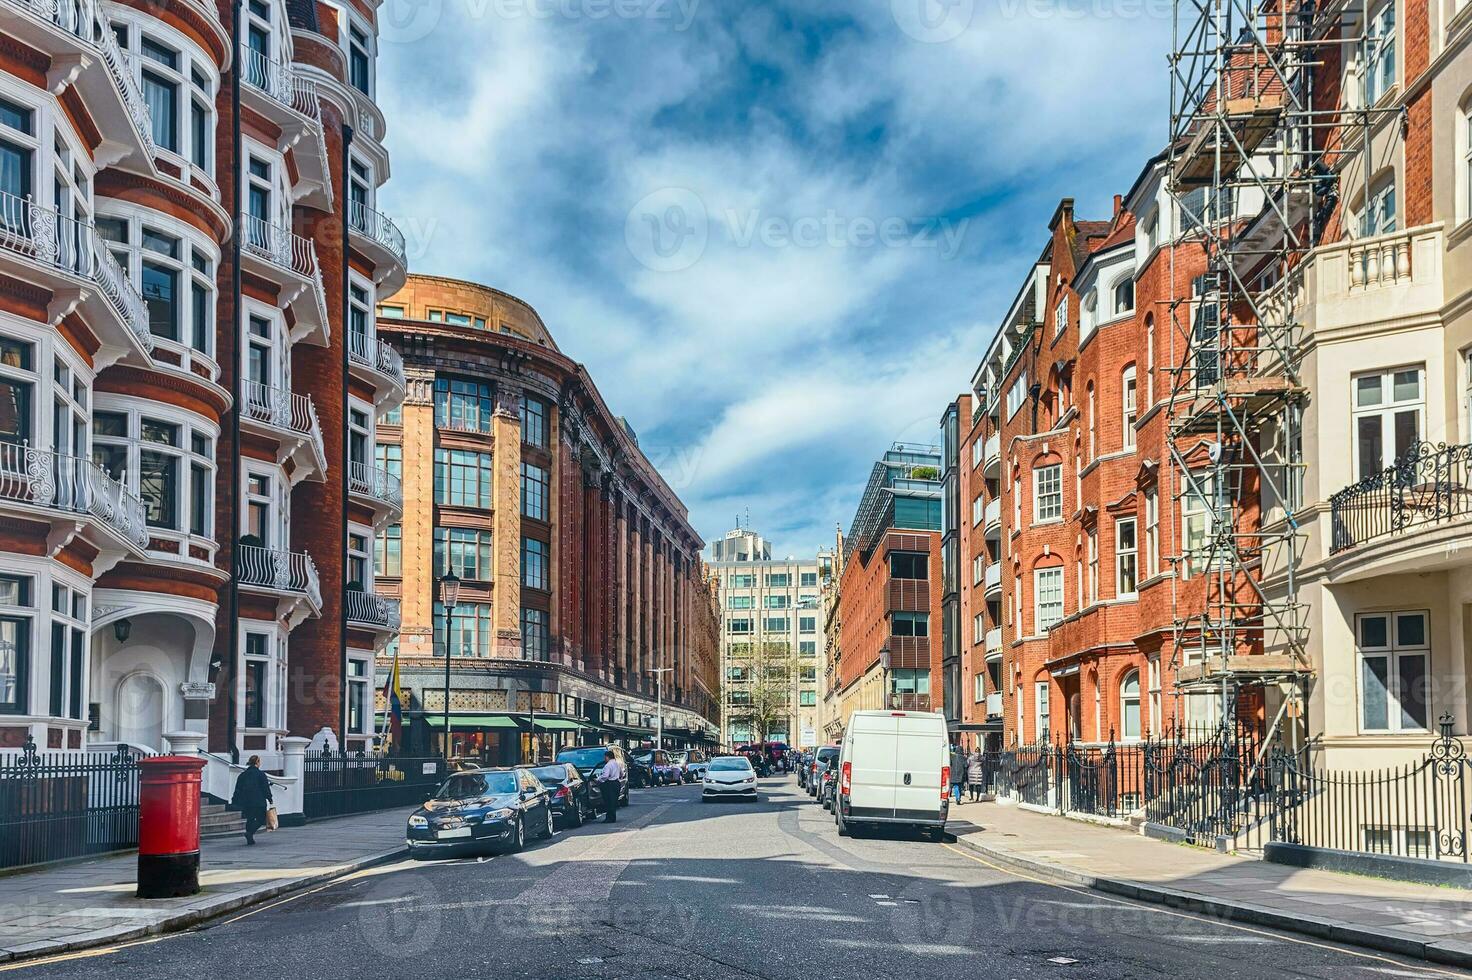 le pittoresque architecture dans chevaliersbridge district, Londres, Angleterre, Royaume-Uni photo